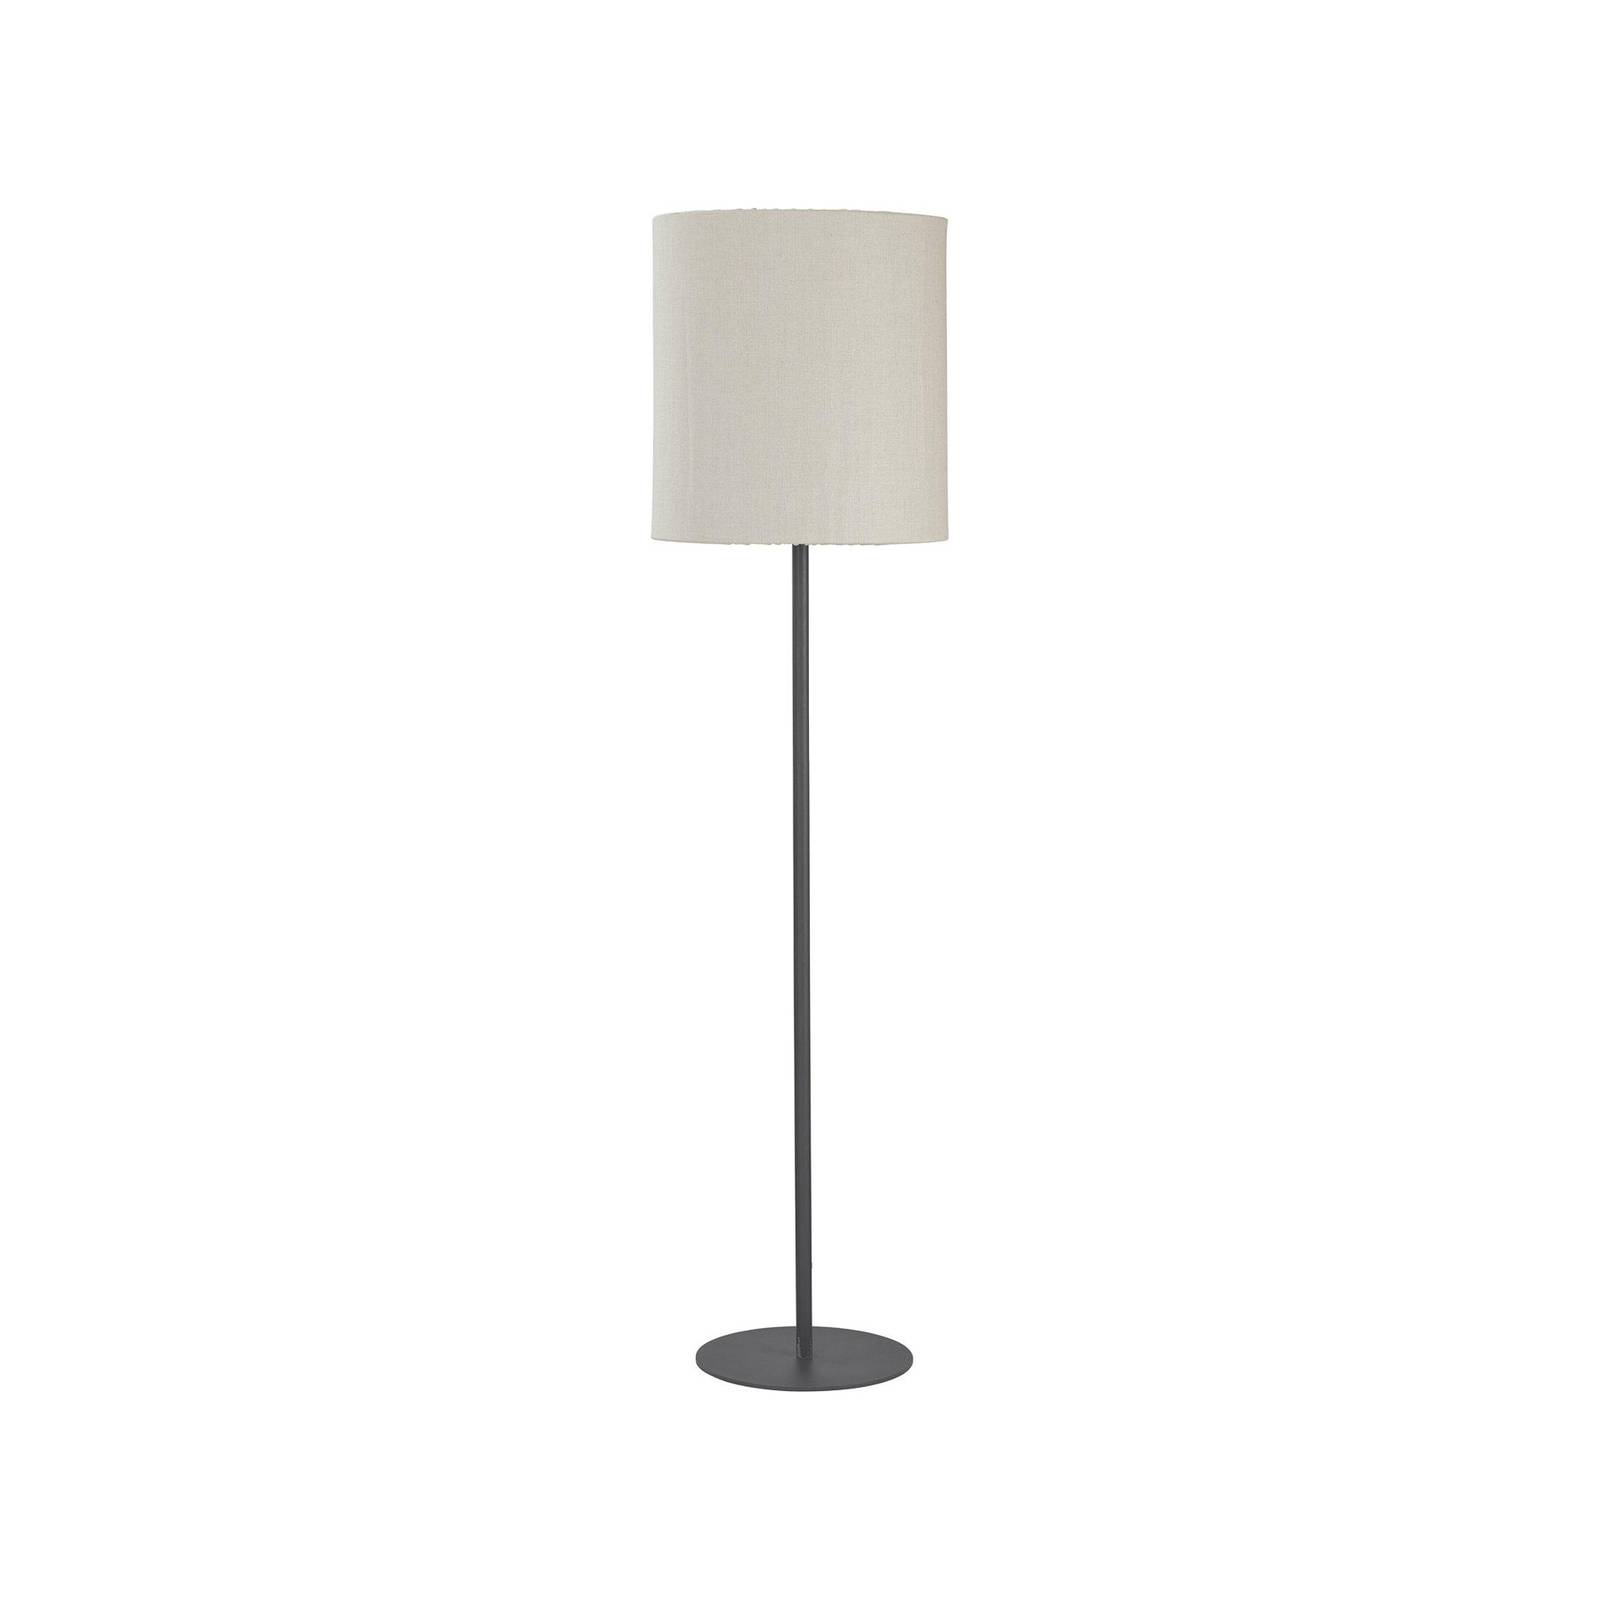 E-shop PR Home vonkajšia stojacia lampa Agnar, tmavo sivá/béžová, 156 cm